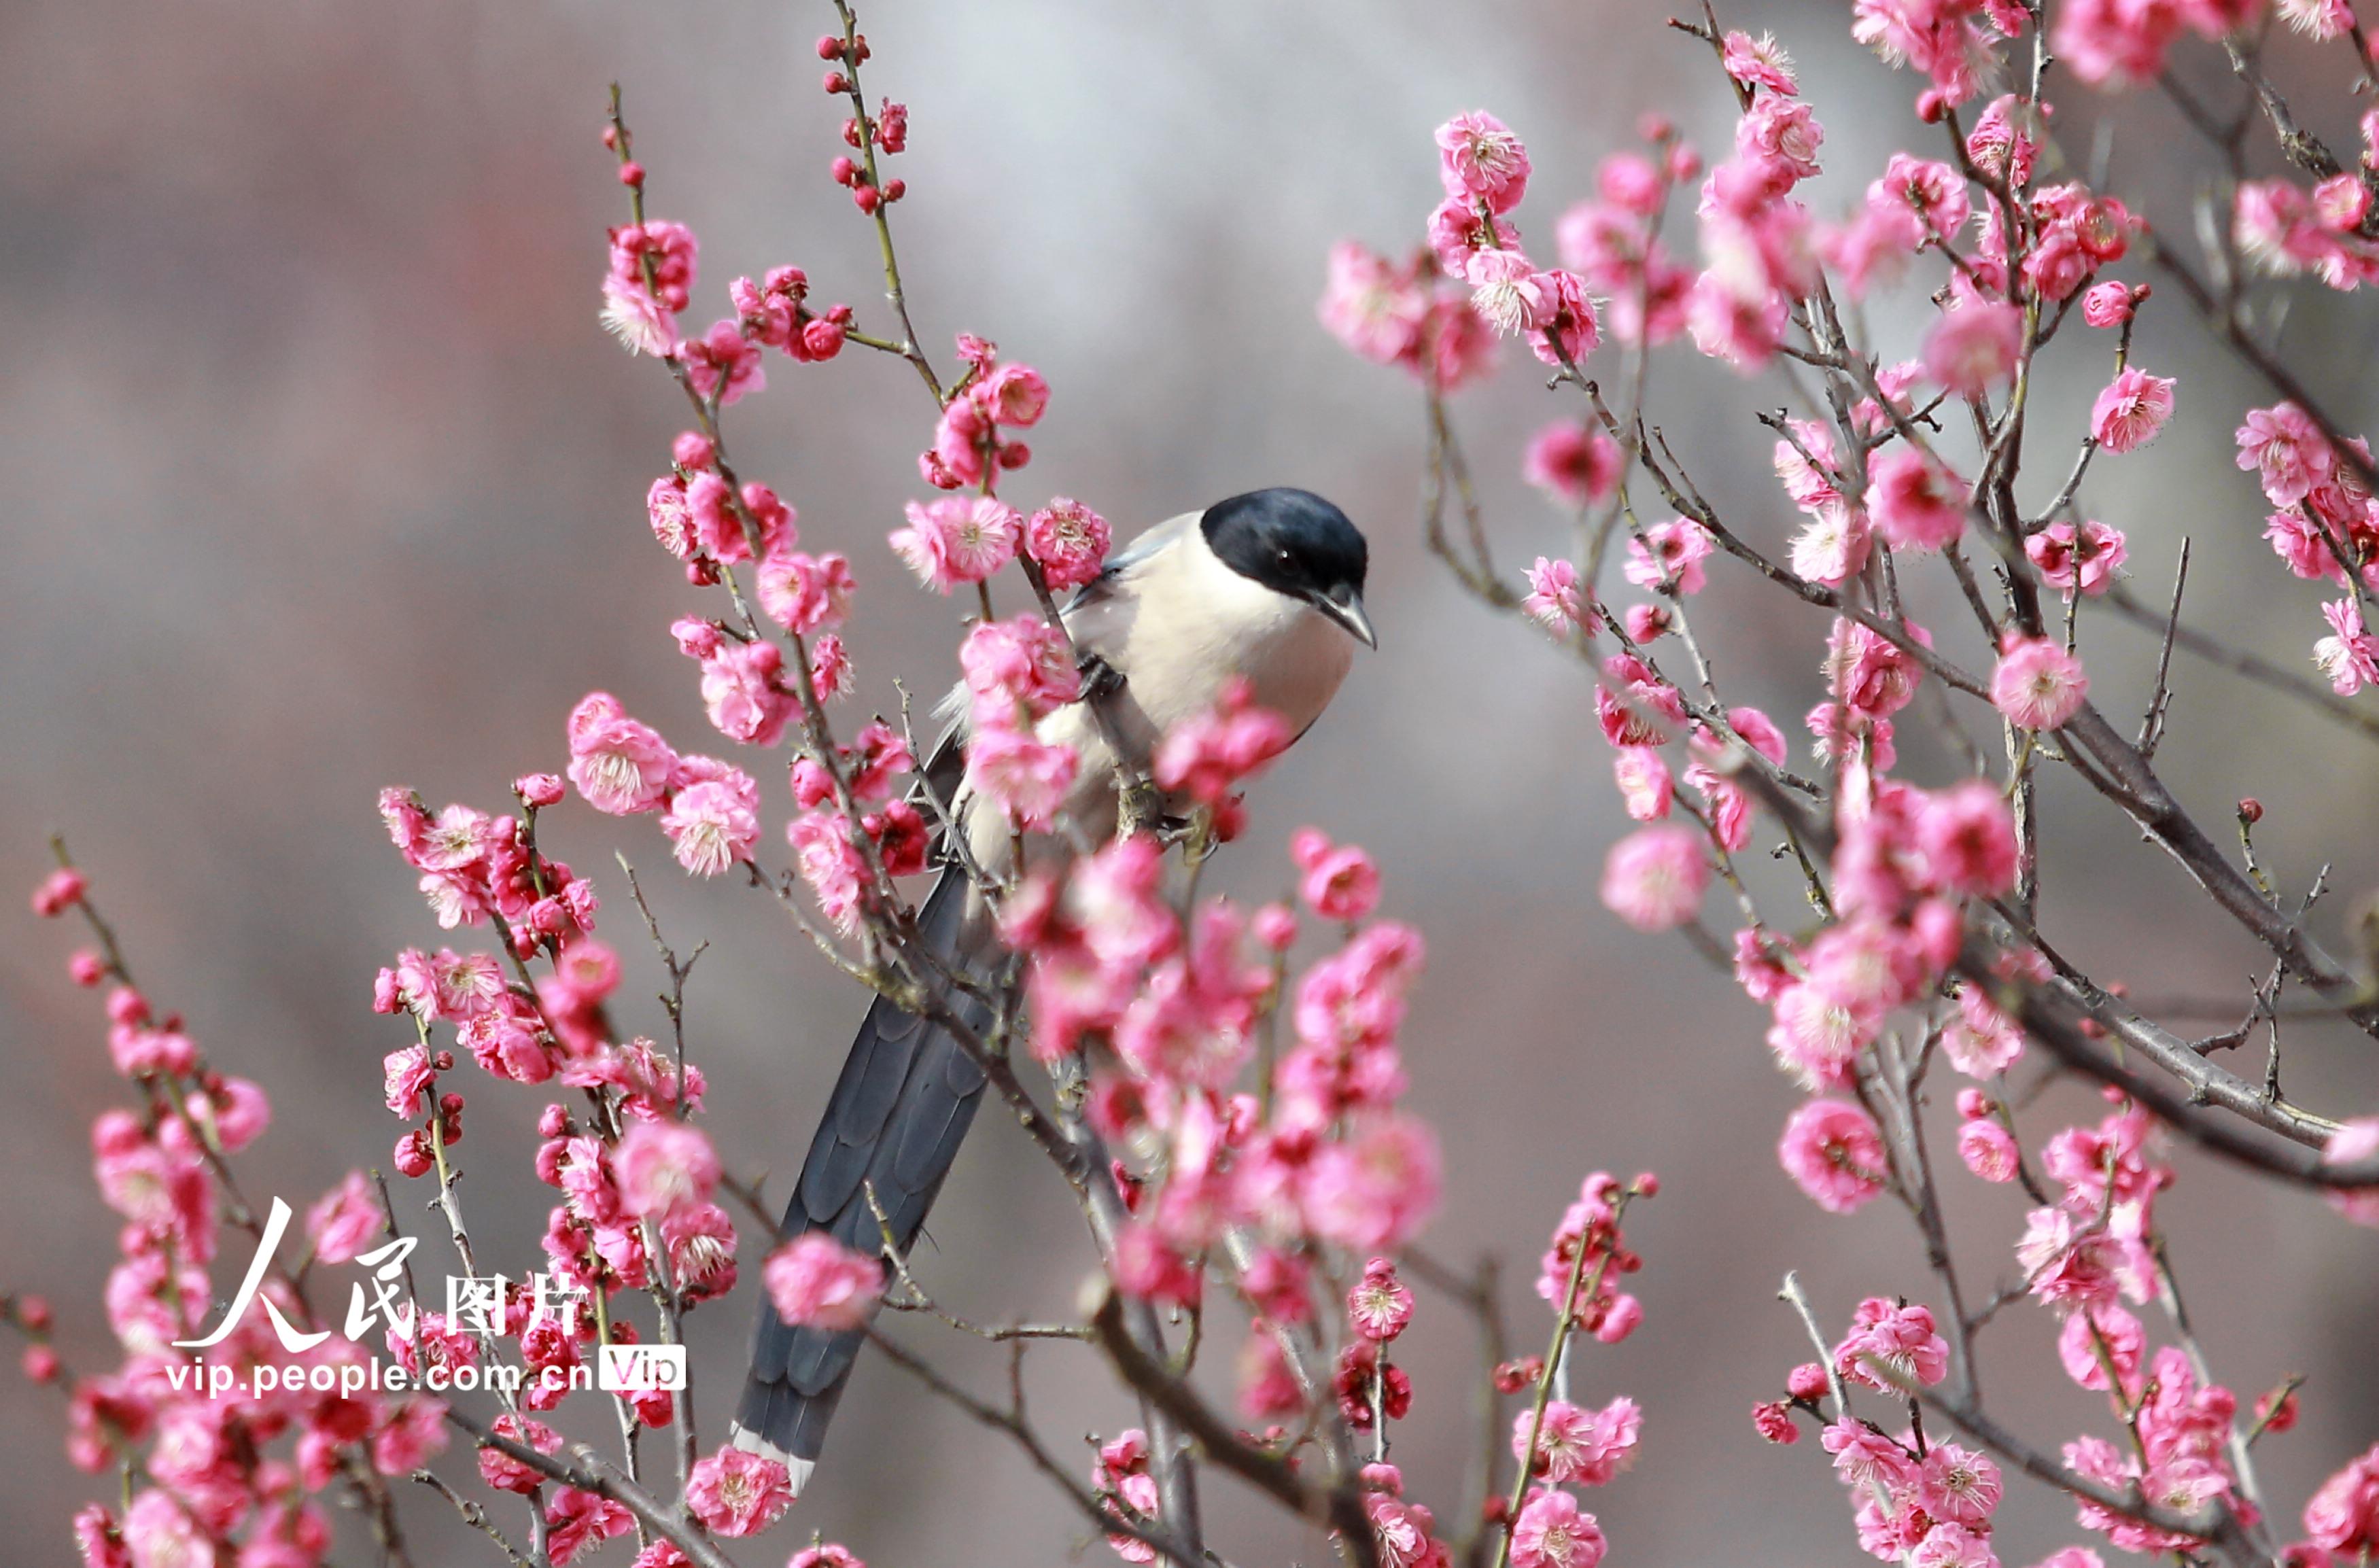  Yangzhou, Jiangsu: Birds Sing and Flowers Smell in Spring